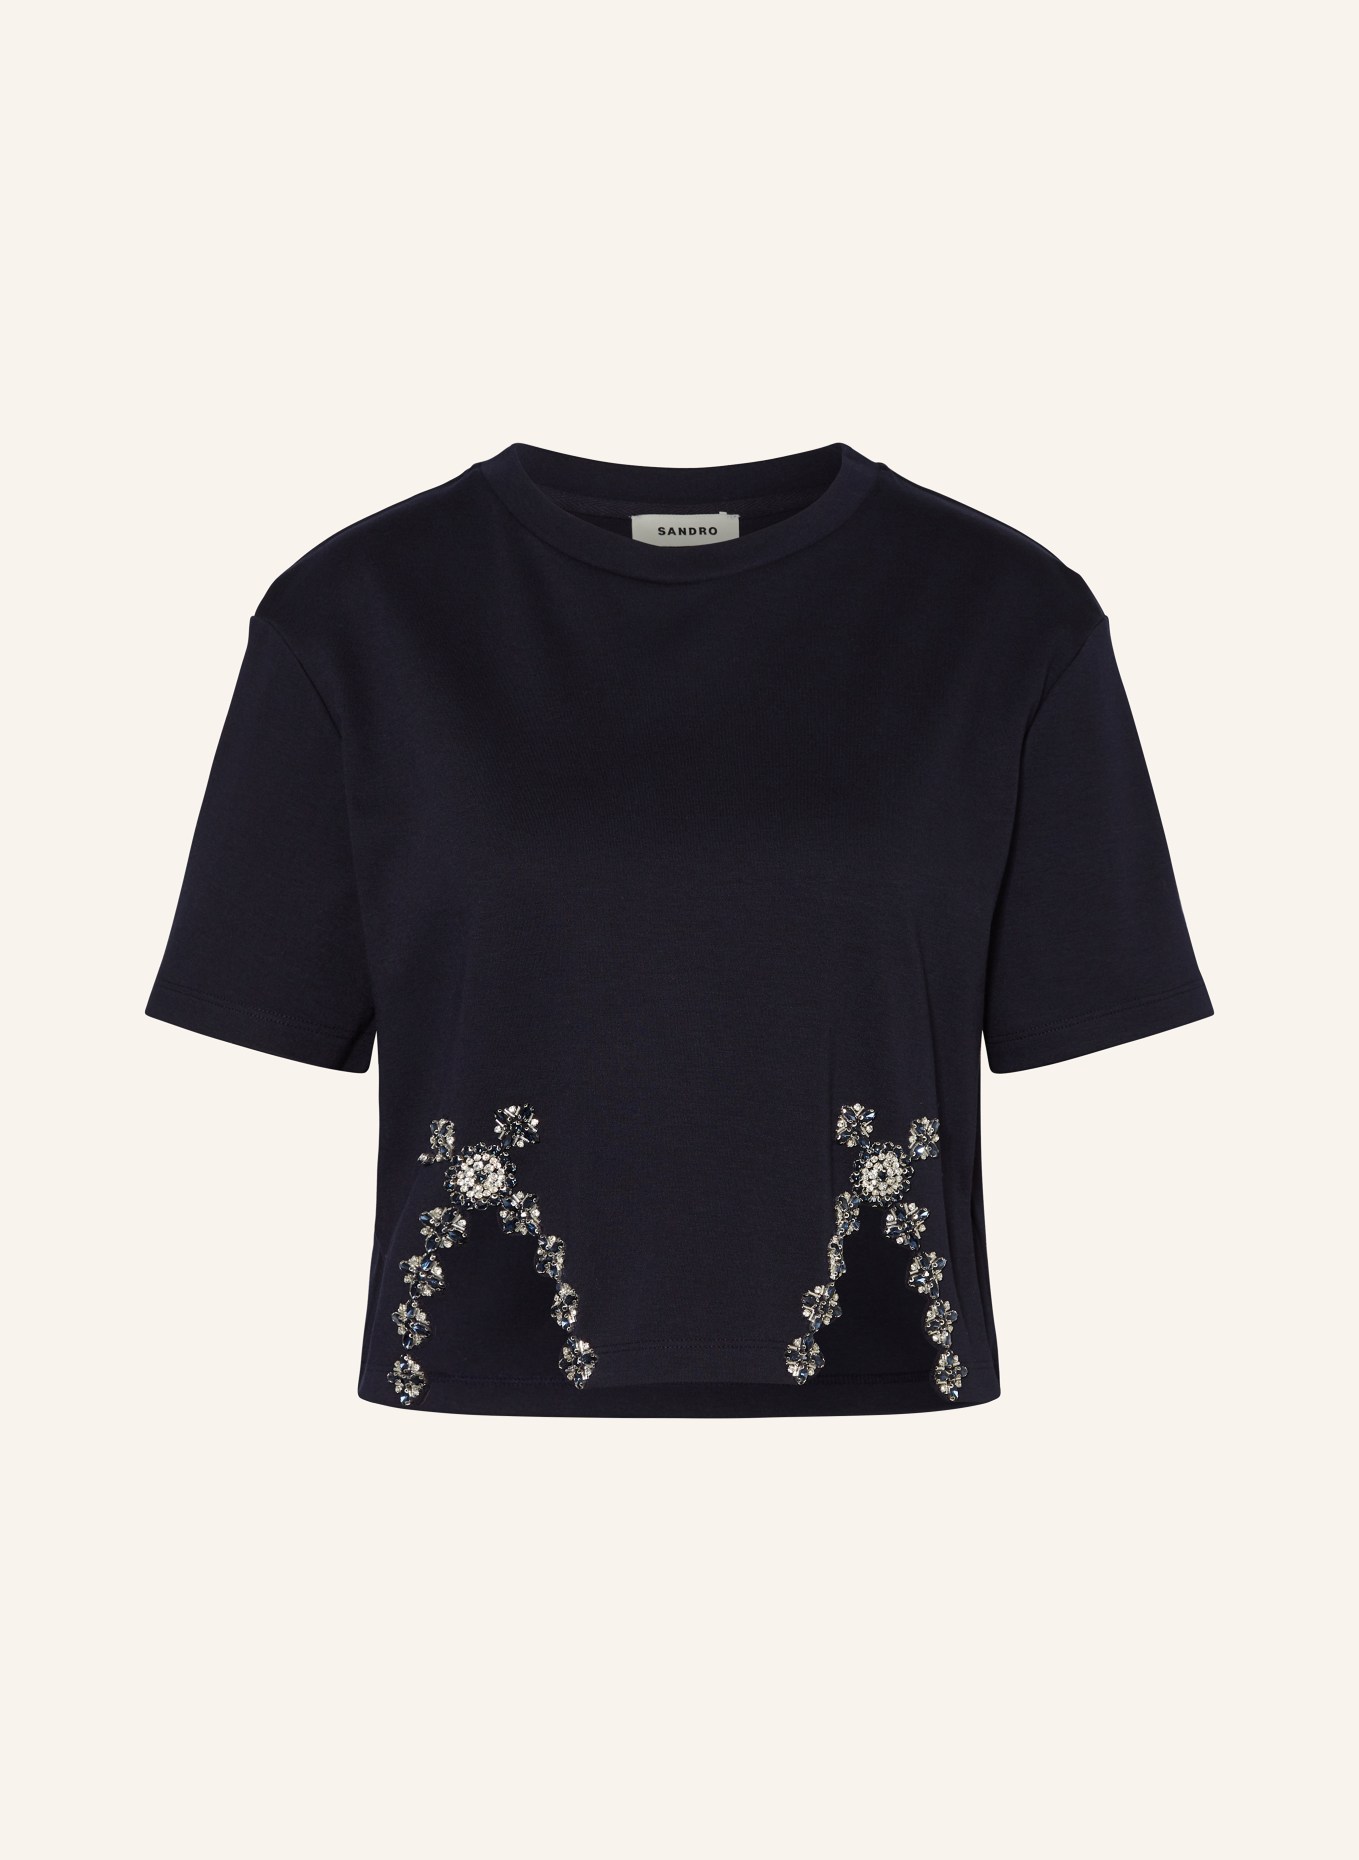 SANDRO Cropped-Shirt mit Schmucksteinen, Farbe: DUNKELBLAU (Bild 1)